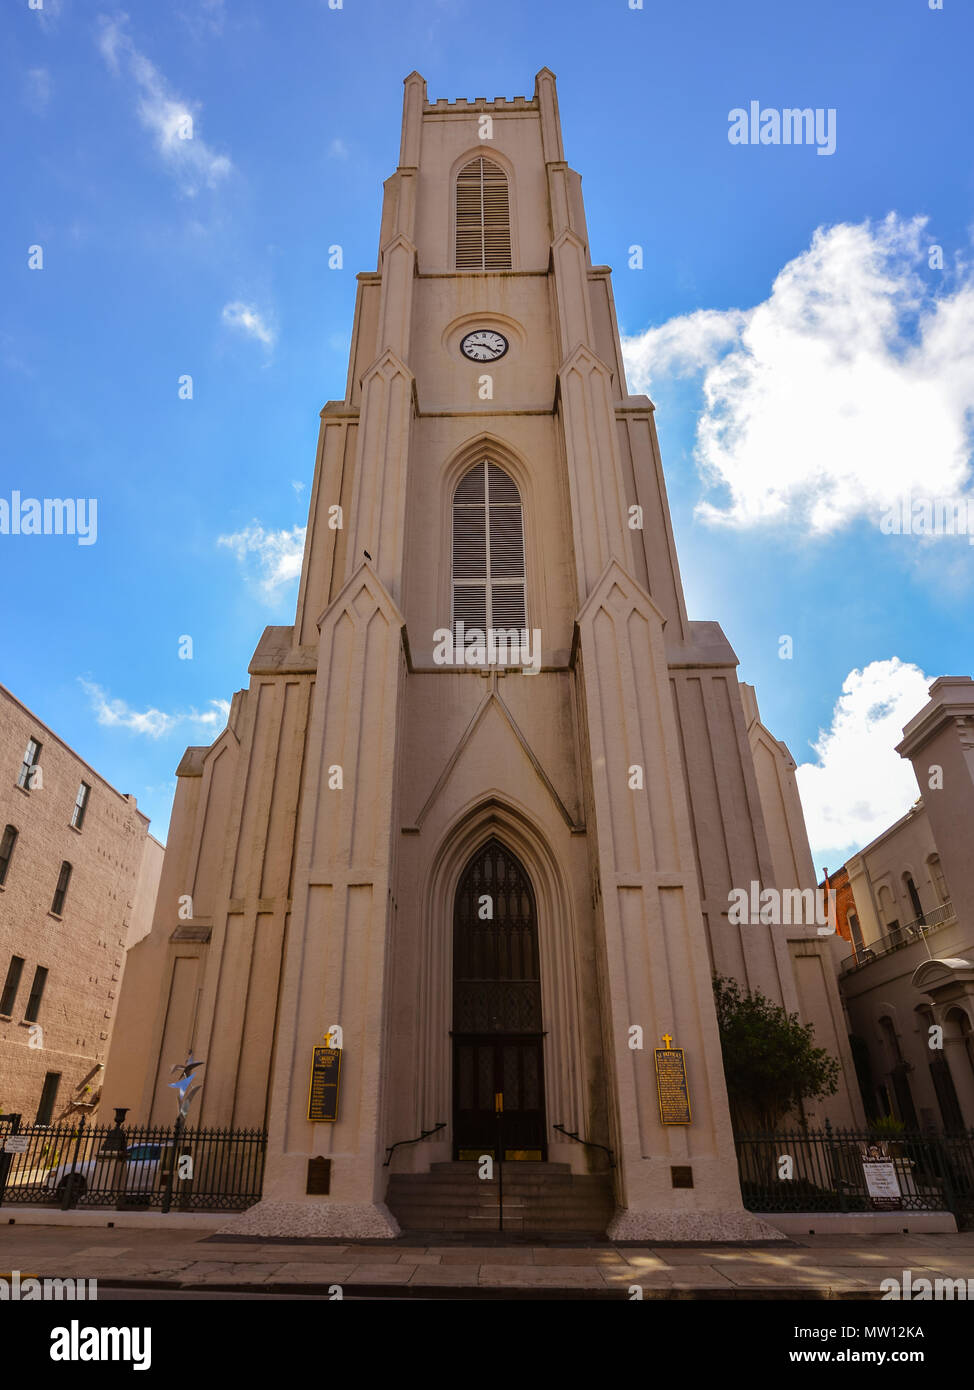 New Orleans, LA : l'église St. Patrick. Achevée en 1840, c'est le deuxième plus ancienne paroisse de la Nouvelle Orléans. Le bâtiment est un monument historique national. Banque D'Images